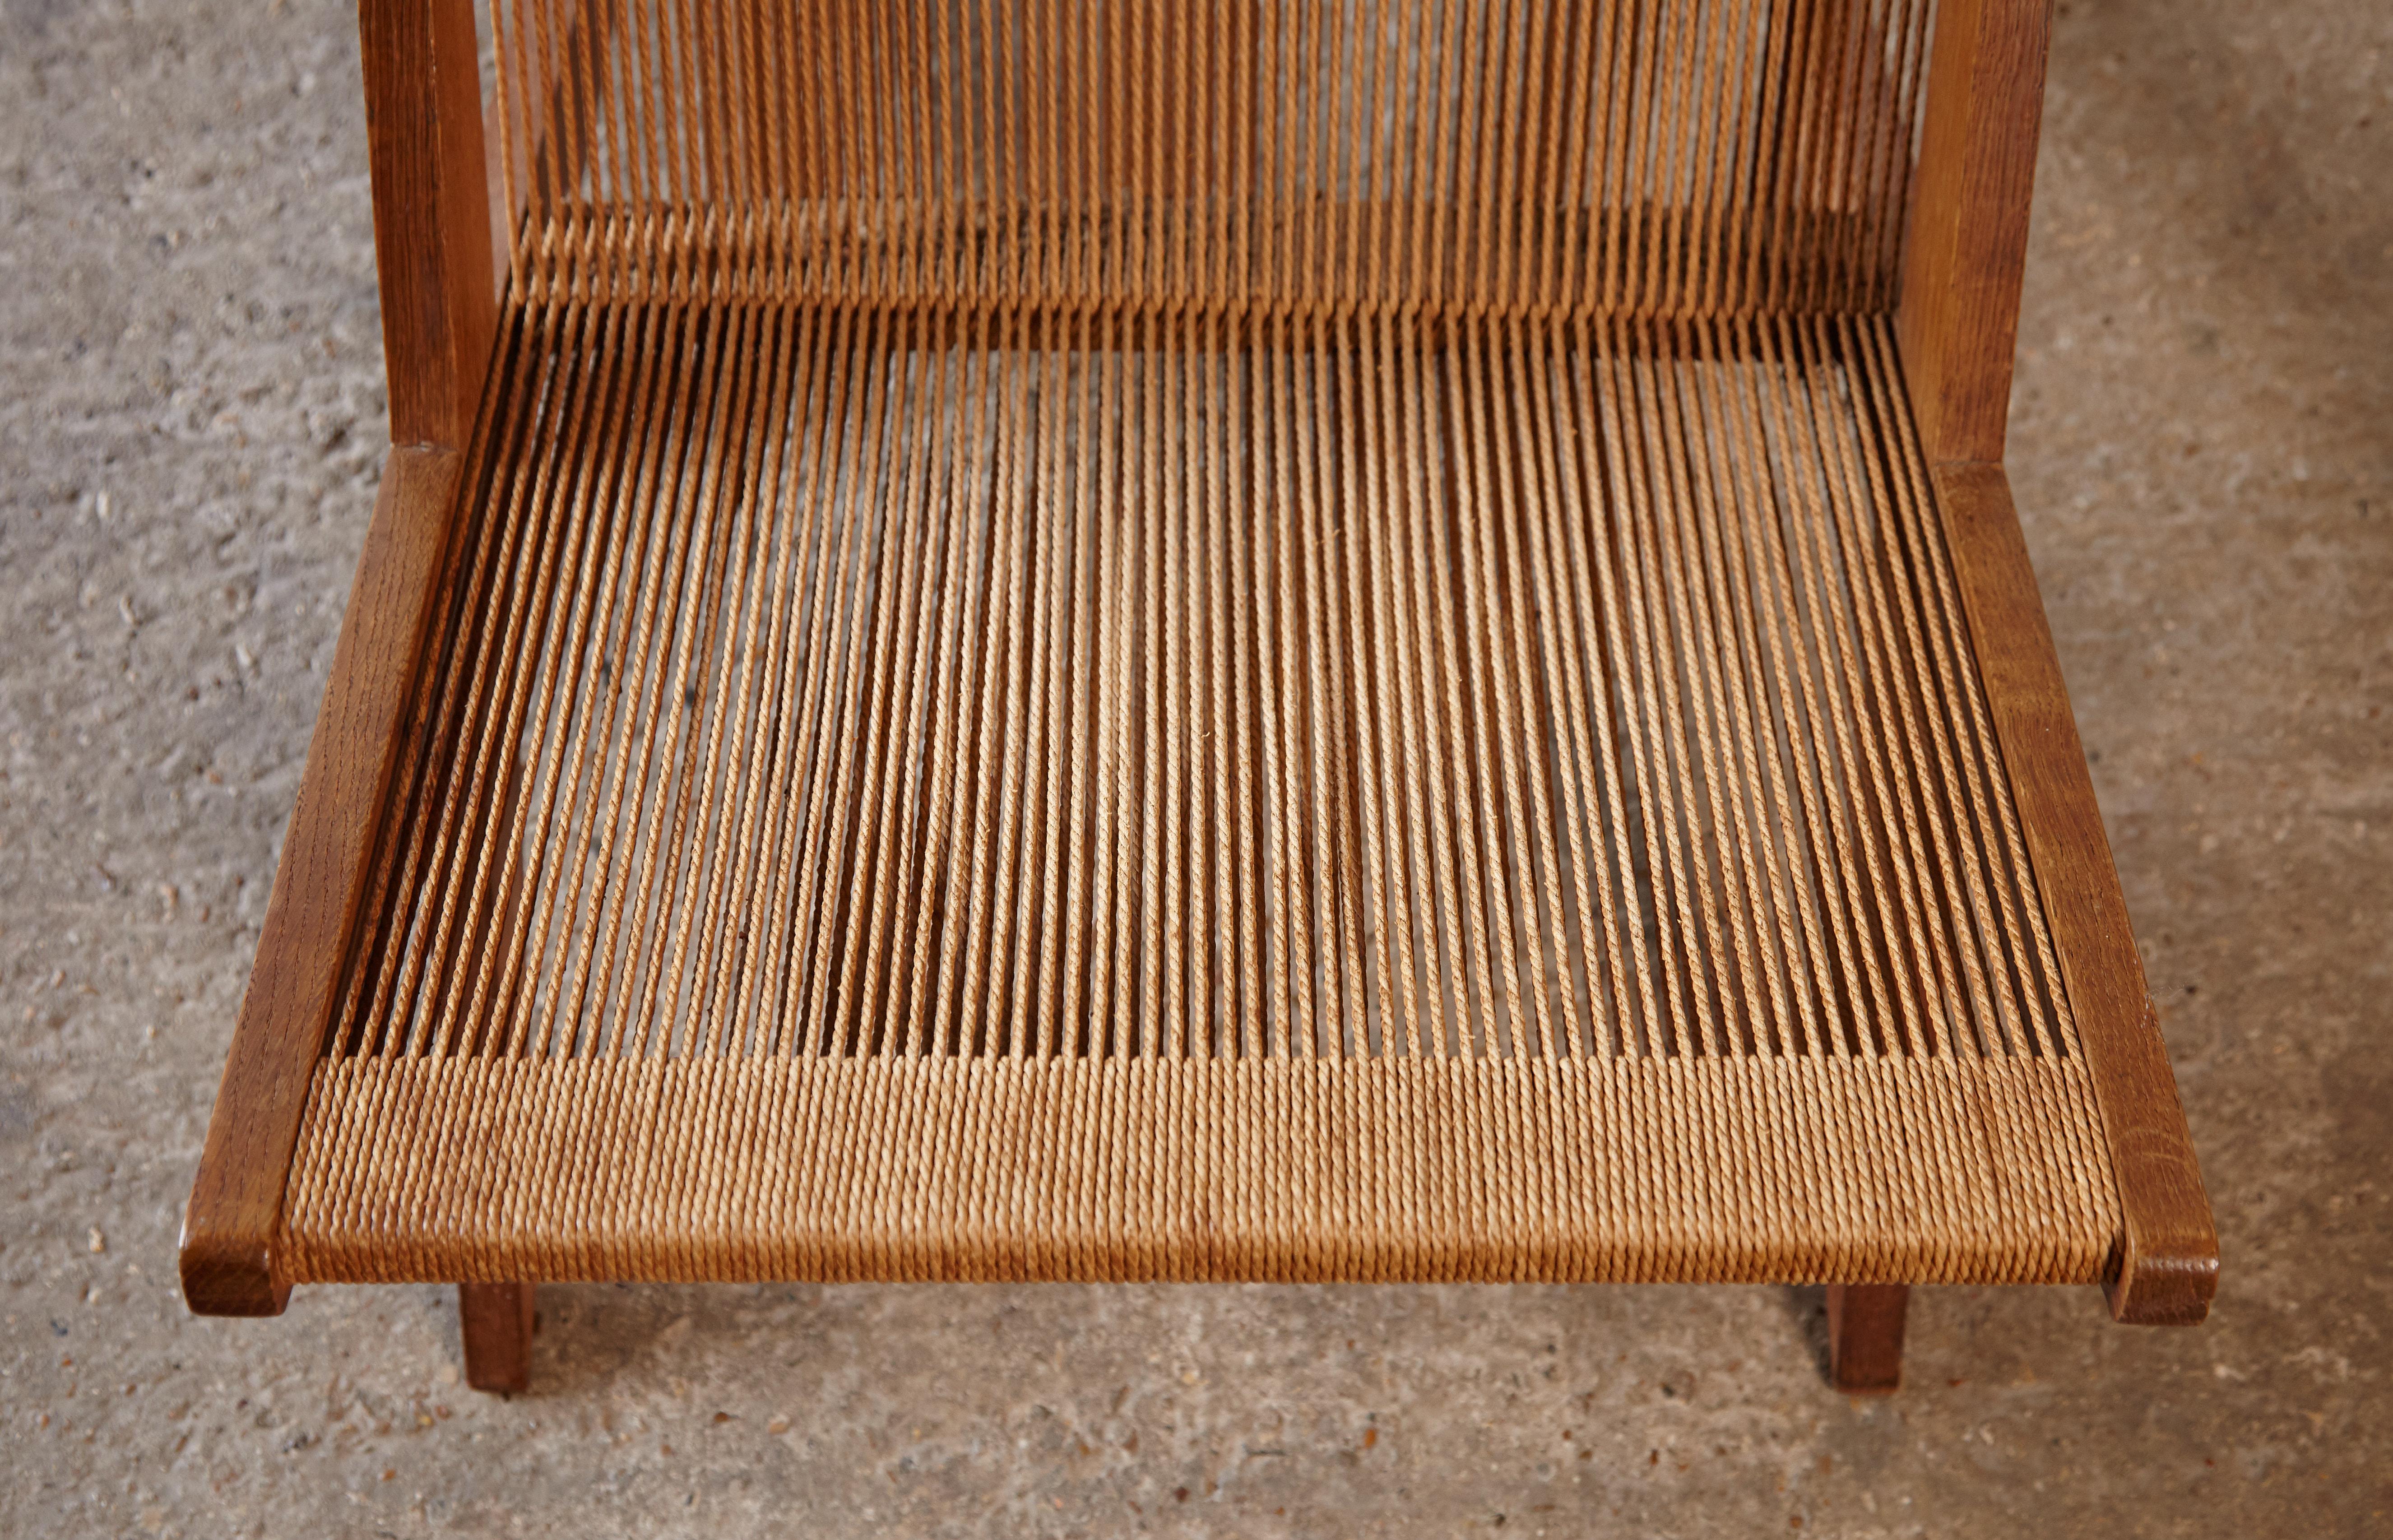 Oak and Rope Chair Attributed to Poul Kjaerholm & Jørgen Høj, Denmark, 1950s 2